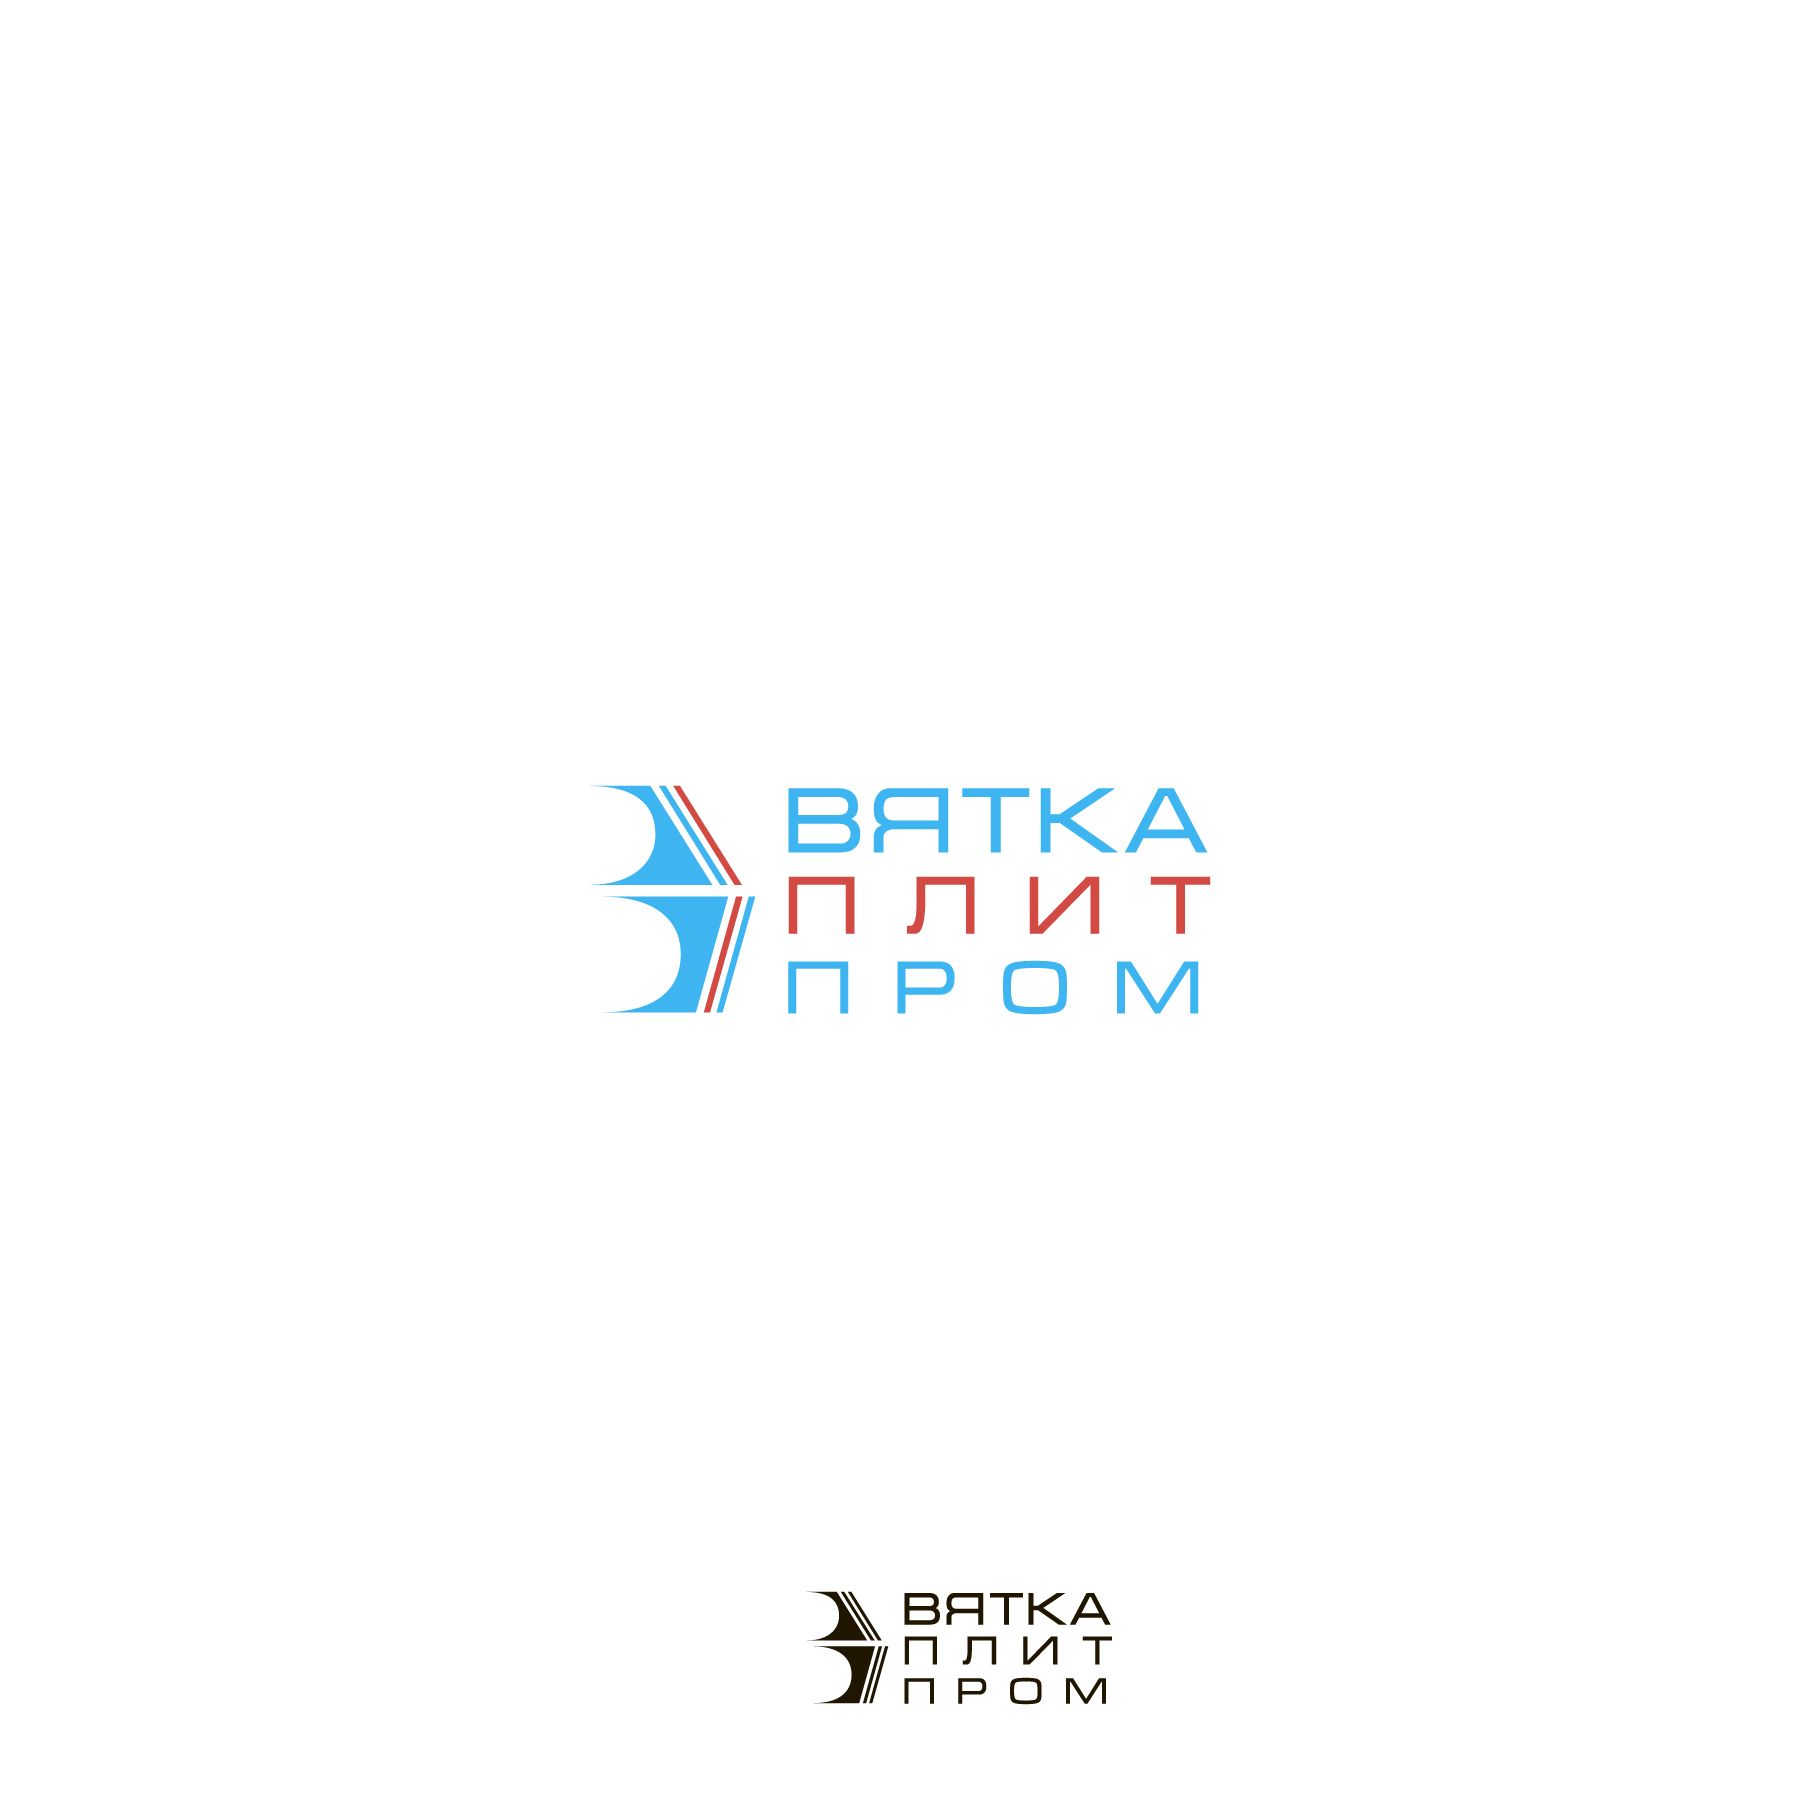 Логотип для Вяткаплитпром - дизайнер Dizkonov_Marat